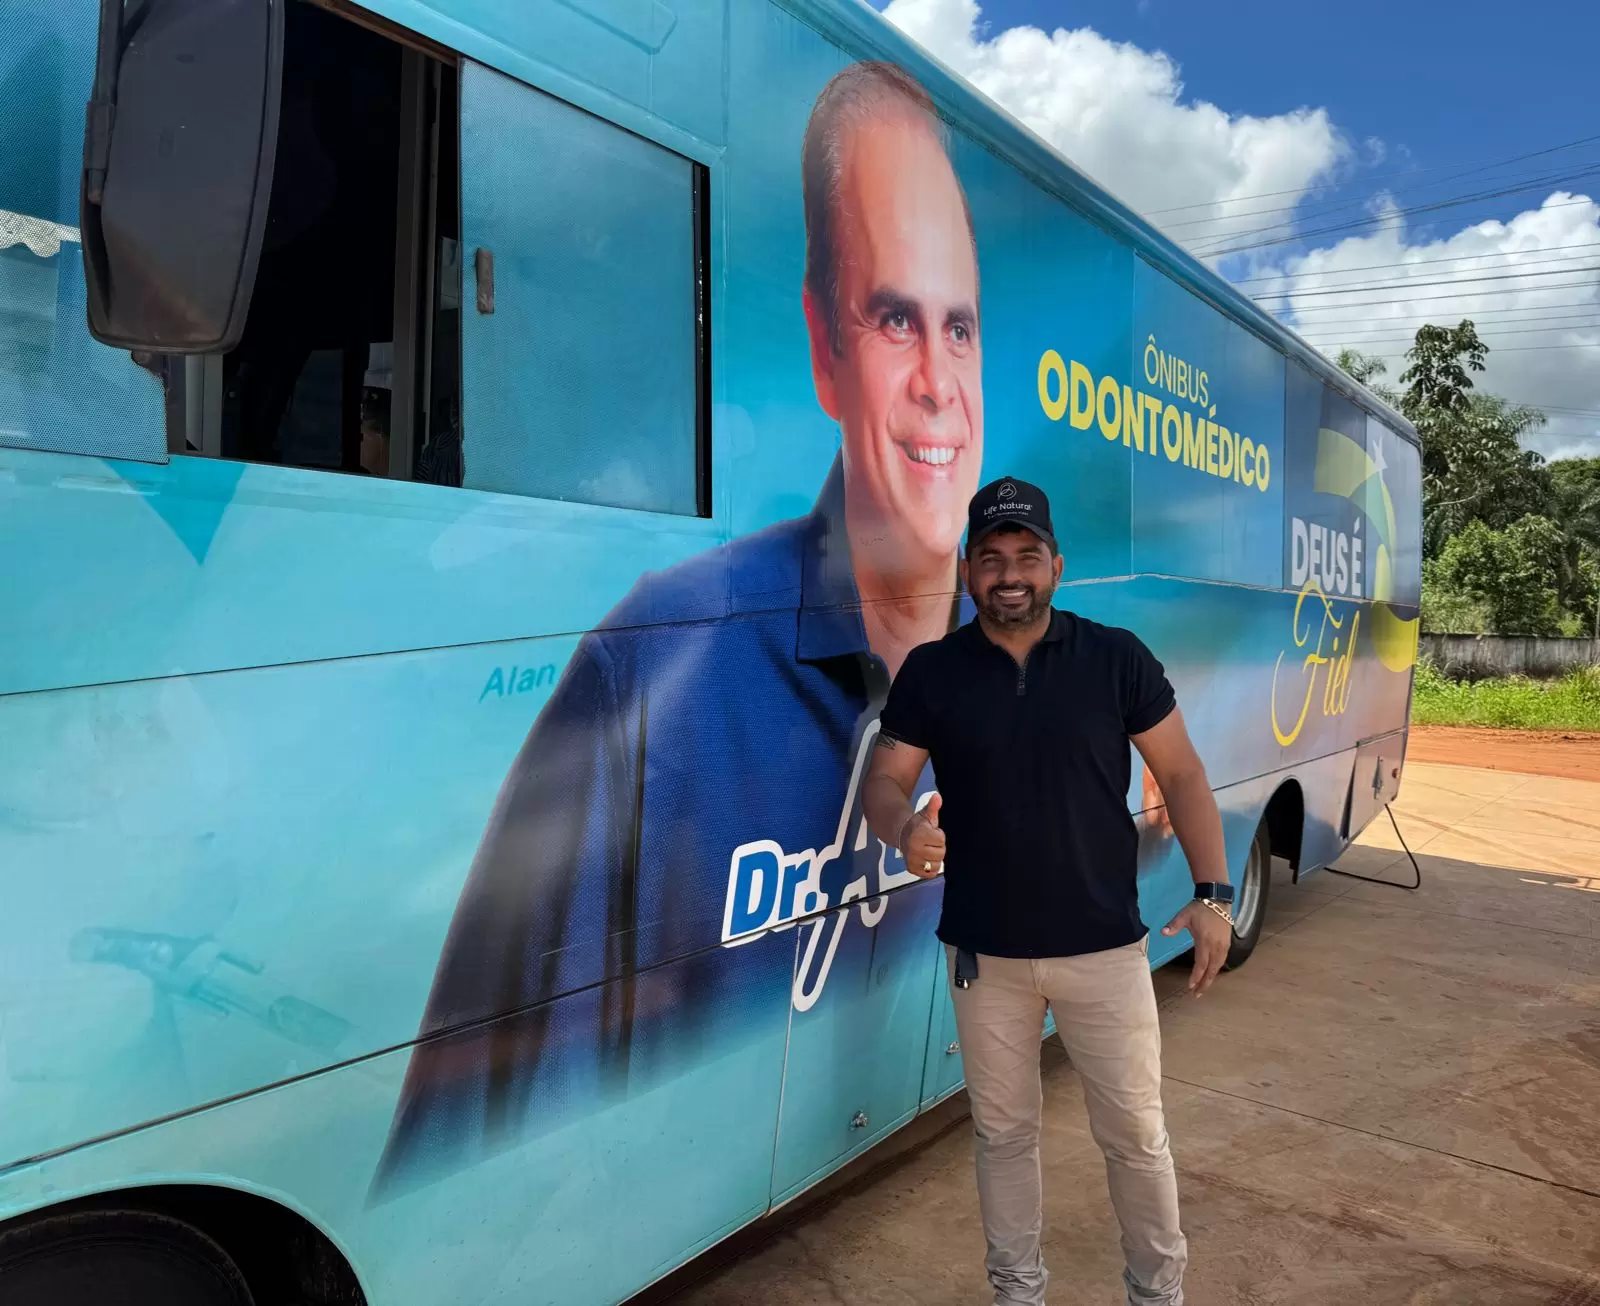 Ônibus Odontológico do Deputado Alan Queiroz Chega a Guajará-Mirim para Beneficiar a População Local